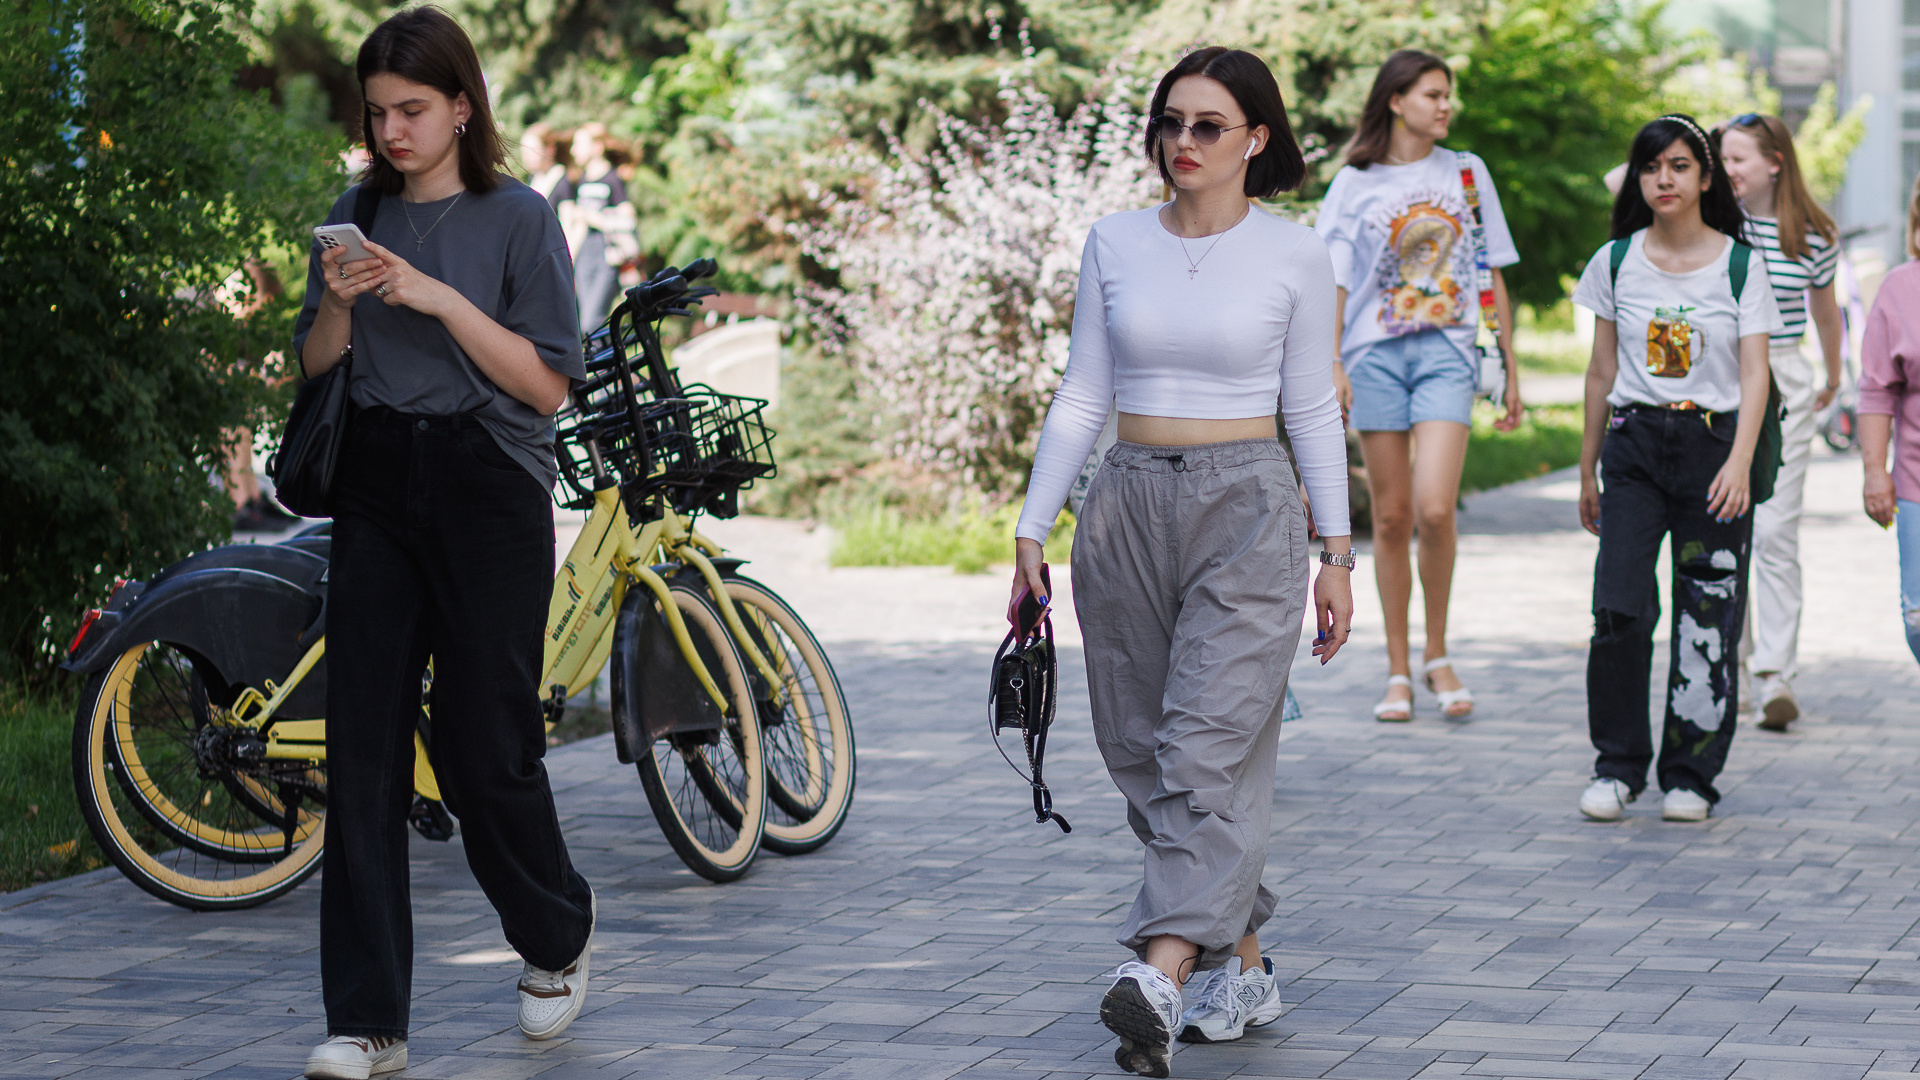 «Надоевший мешок сменяют старые деньги»: эксперты рассказали об изменчивой женской моде этим летом в Волгограде